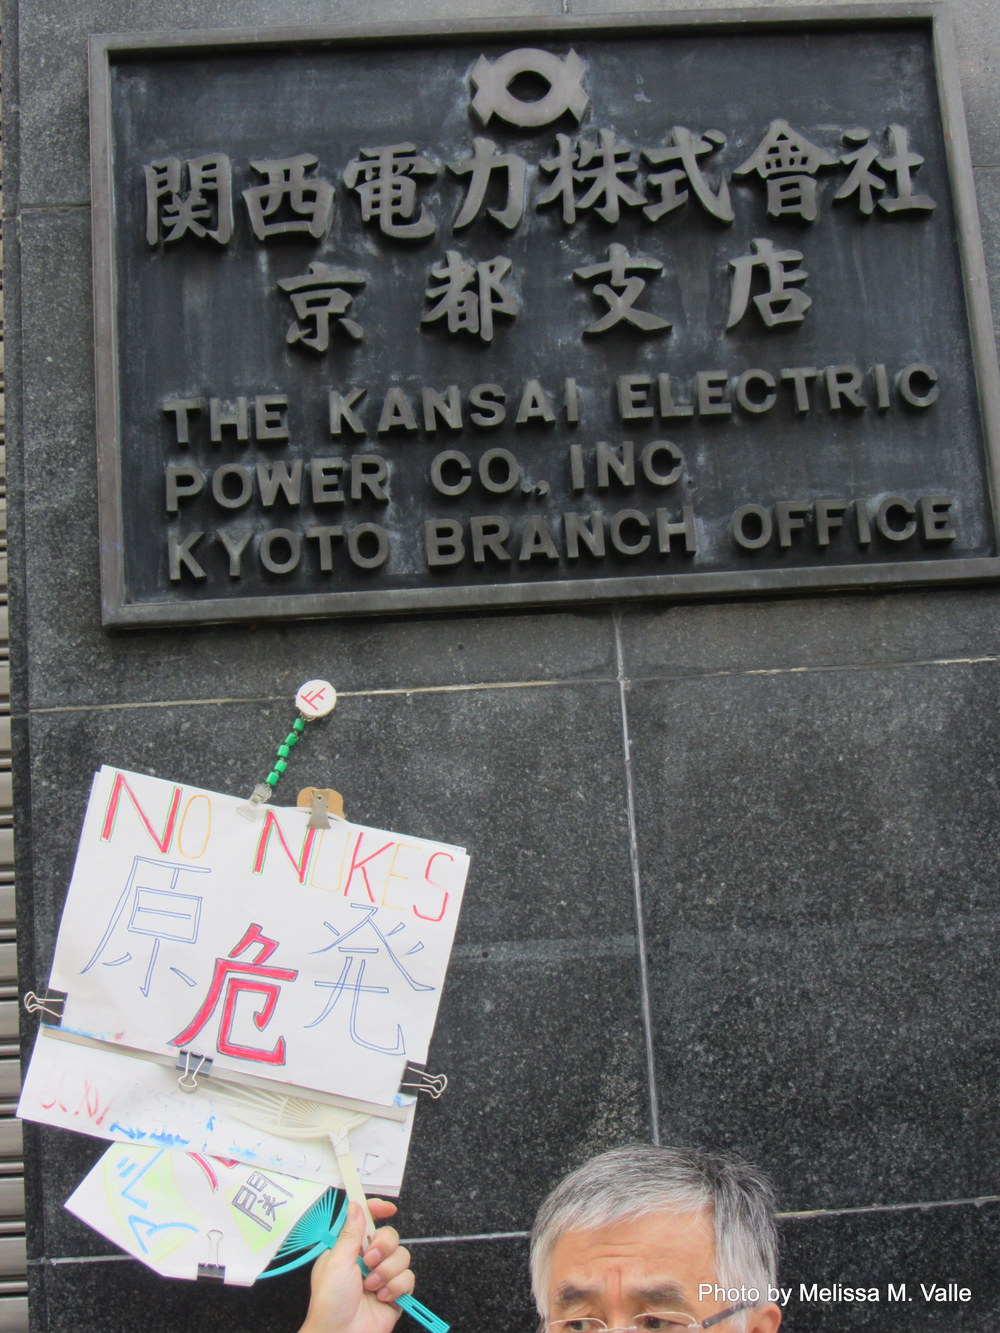 7.18.14 Kyoto, Japan-Anti-nukes protesters (8).JPG